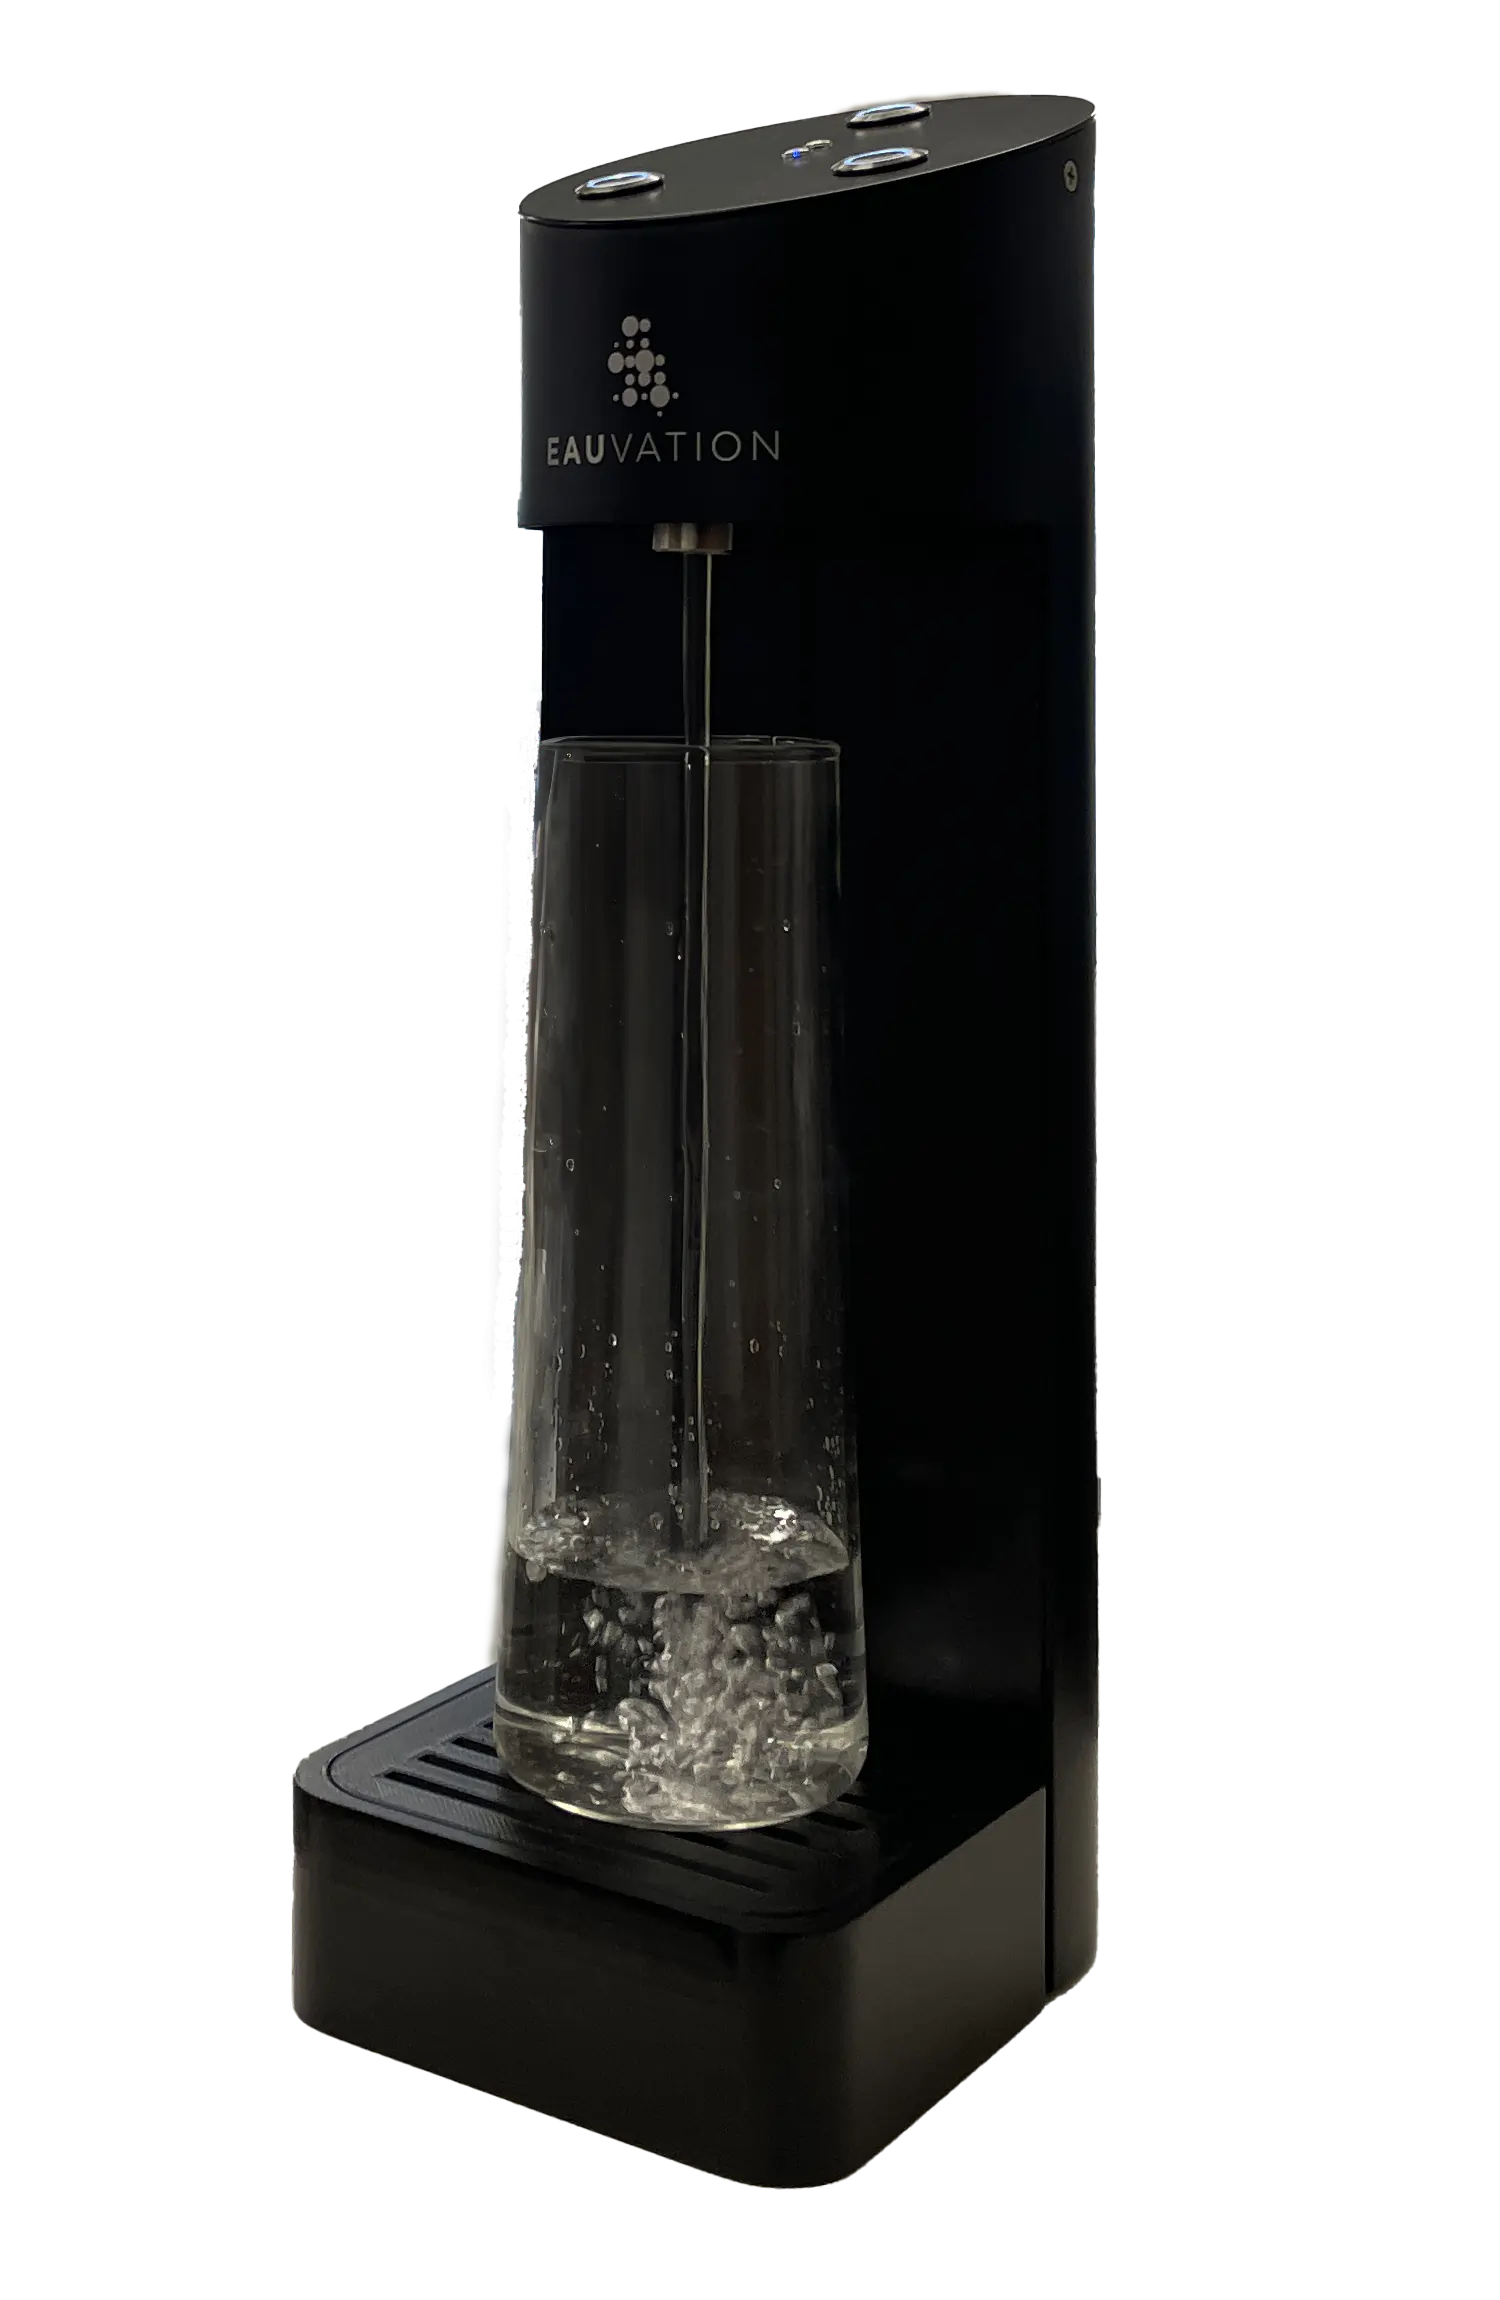 Acqua Tower füllt eine Glaskaraffe mit Wasser